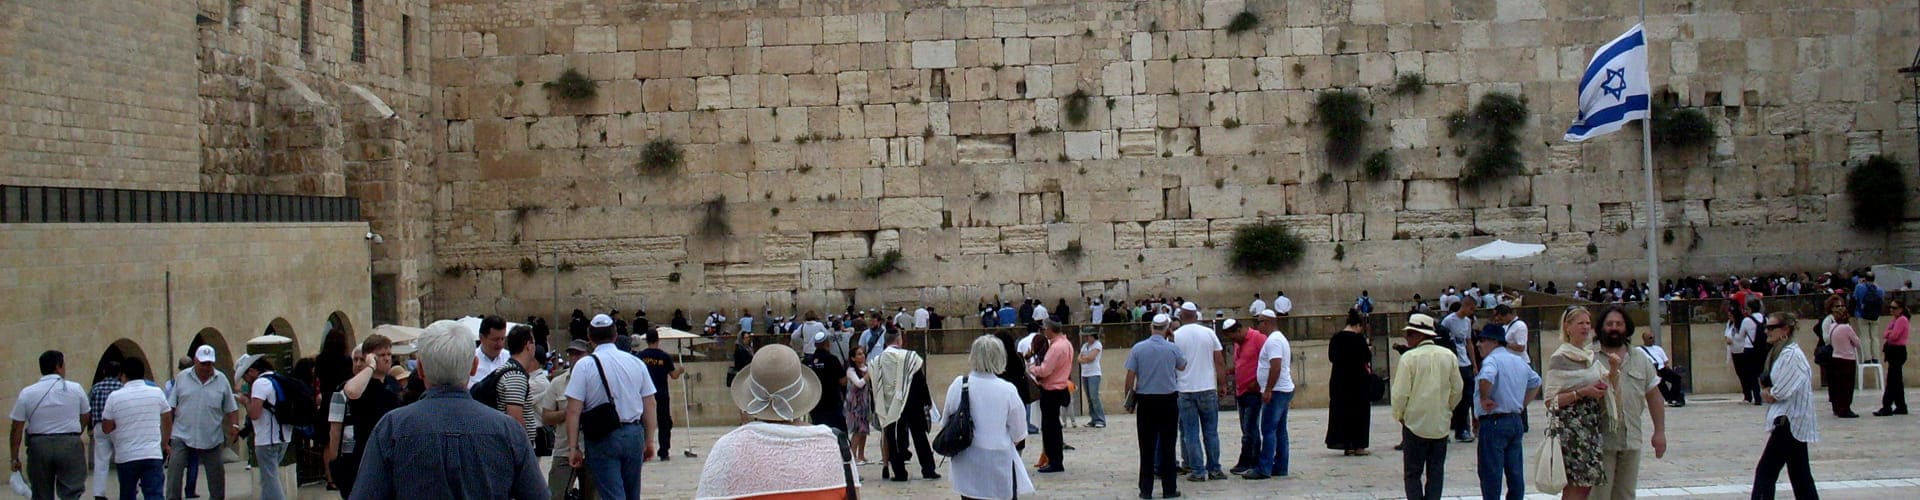 Иерусалим - стена Плача